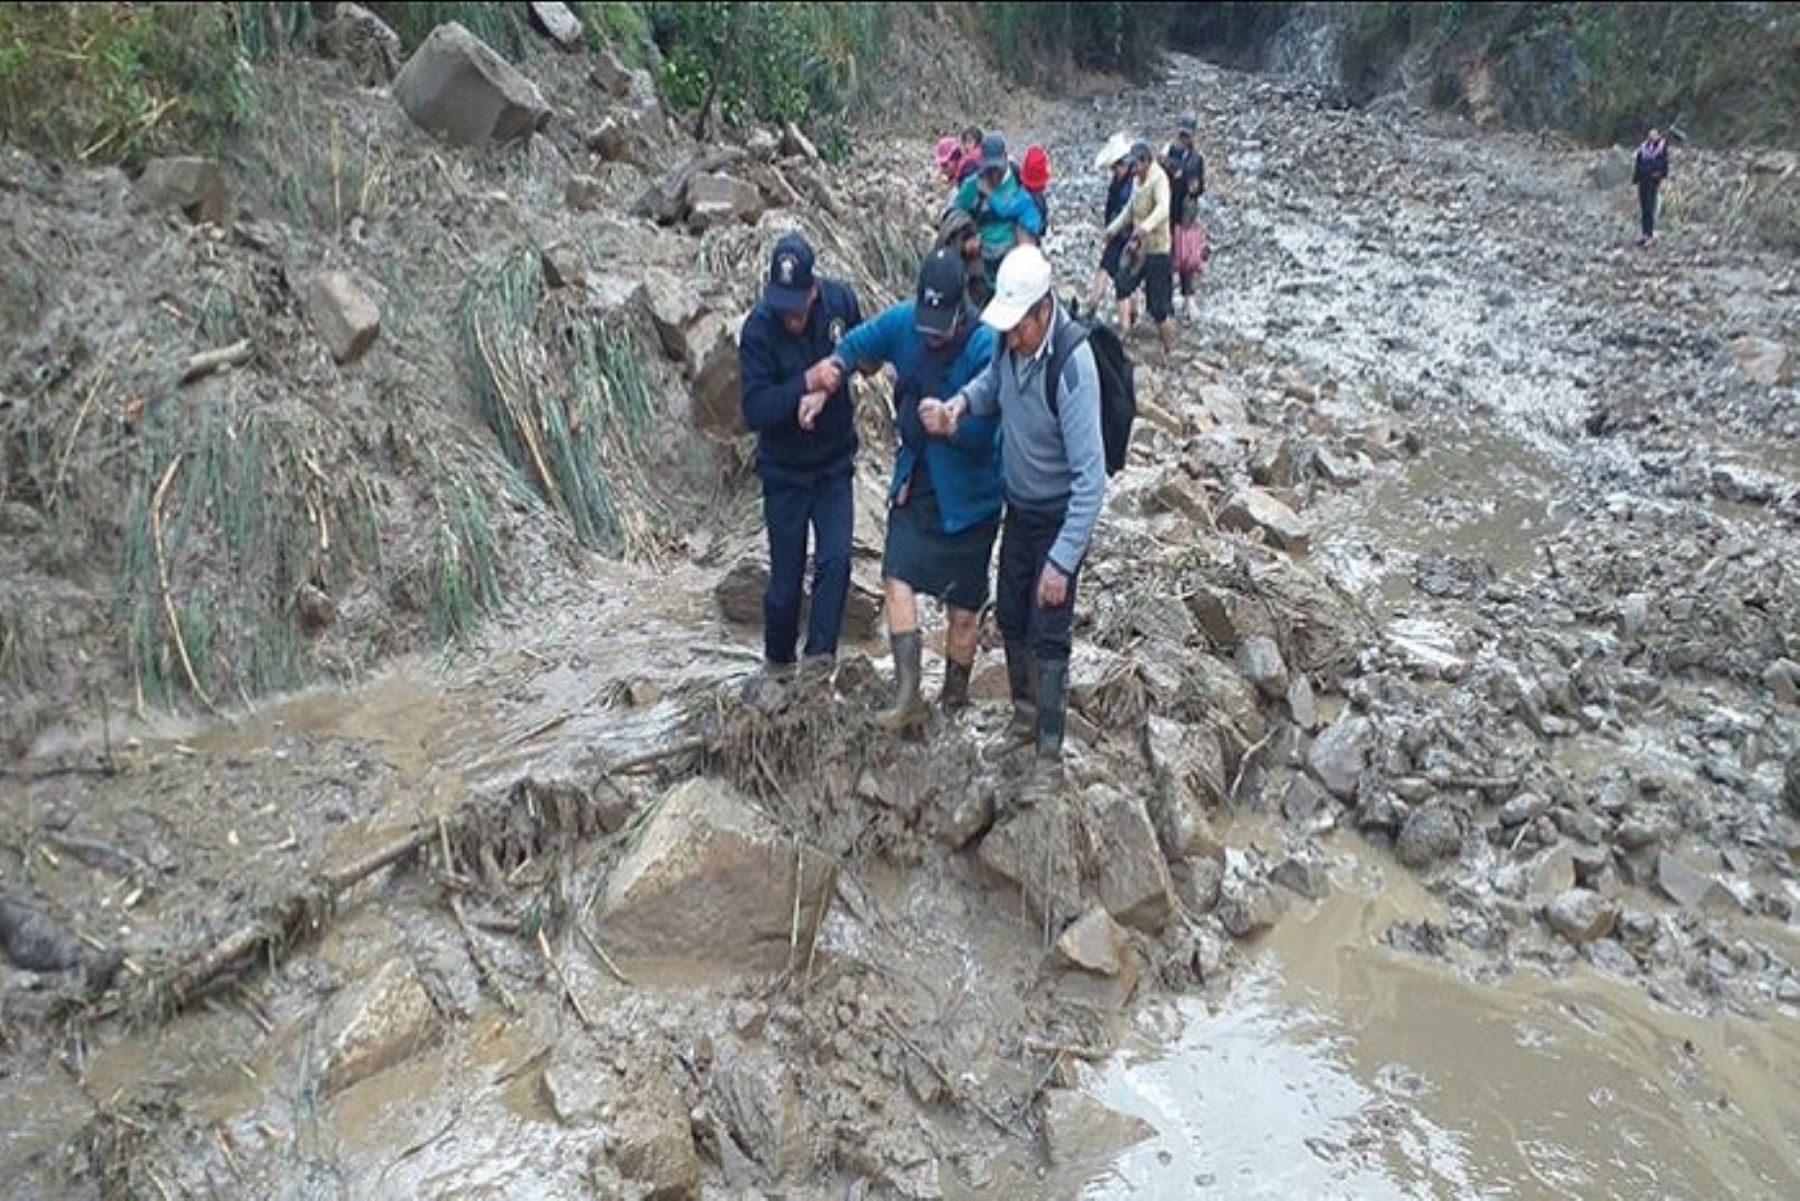 El Gobierno declaró el estado de emergencia al distrito de San Ignacio, región Cajamarca, afectado por caída de huaico. ANDINA/Difusión